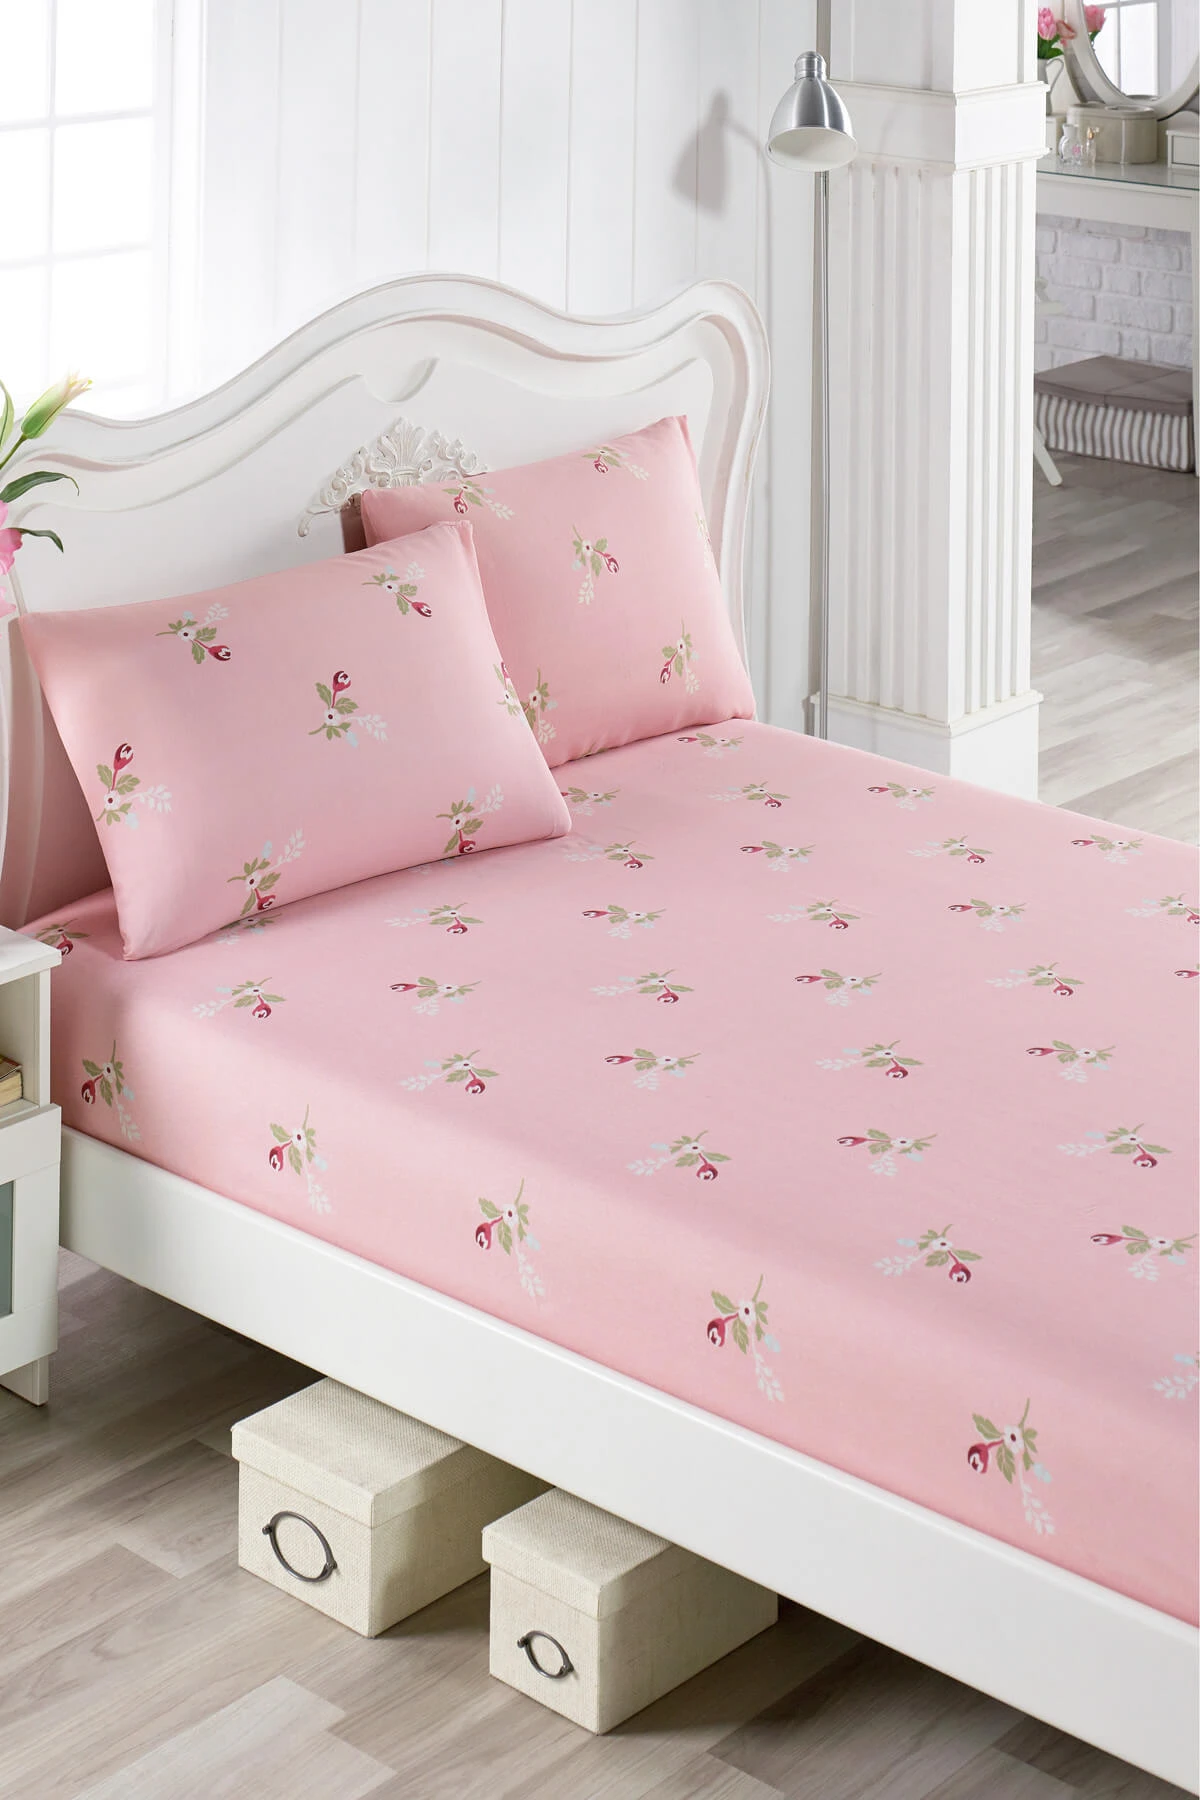 Zweet Sinewi omhelzing Kids Bed Sheet+Pilowcase Set Girls 160*220 Linen Mattress Bedroom  Accessories Children Toddler Stuff Pink Floral Ultra Soft|Sheets| -  AliExpress